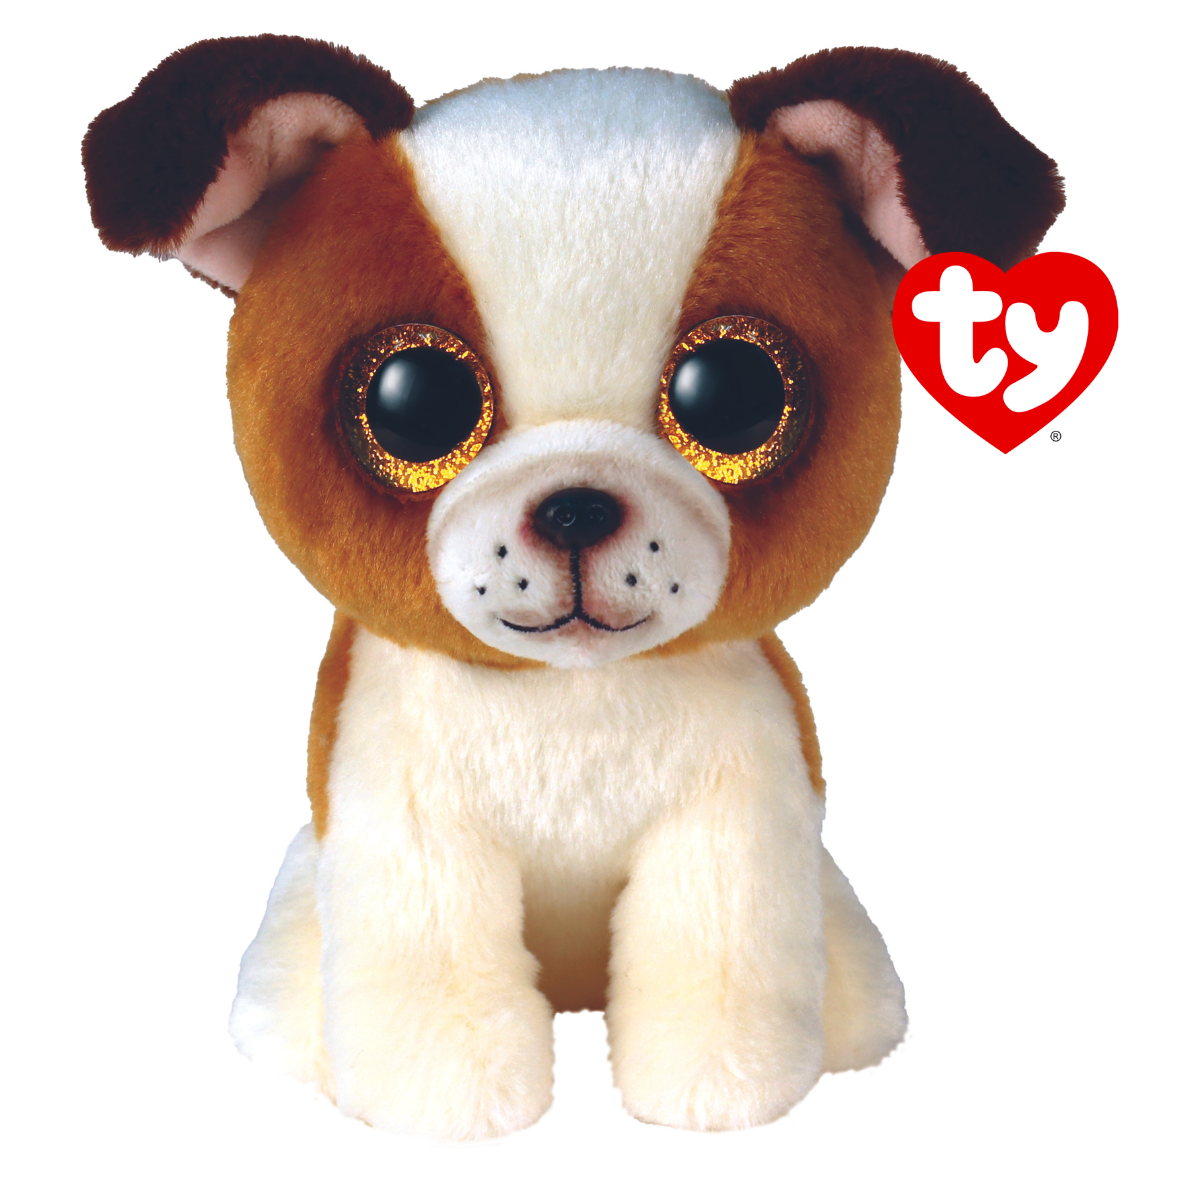 Ty - peluche - beanie boos - cane - hugo - bianco e marrone - cagnolino con occhioni glitter dorati - il morbido pupazzo con gli occhi grandi scintillanti - 15 cm - 36396 - TY